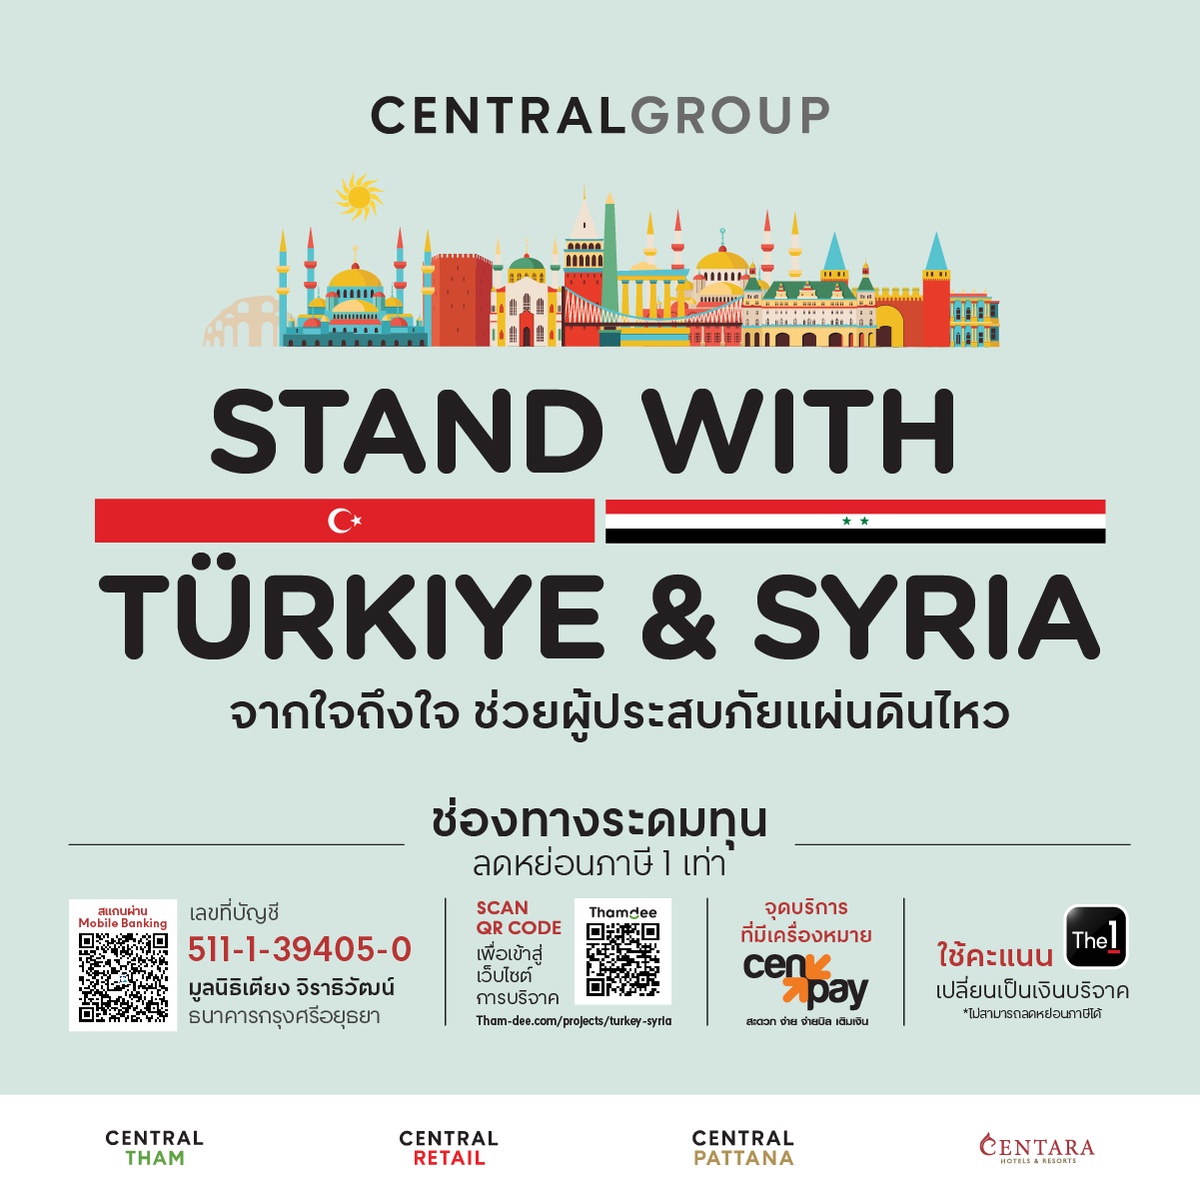 กลุ่มเซ็นทรัล รวมพลังธุรกิจในเครือ เปิดแคมเปญระดมทุน Stand with Tuerkiye Syria จากใจถึงใจ ช่วยผู้ประสบภัยแผ่นดินไหว ประเทศทูร์เคีย (ตุรกี)